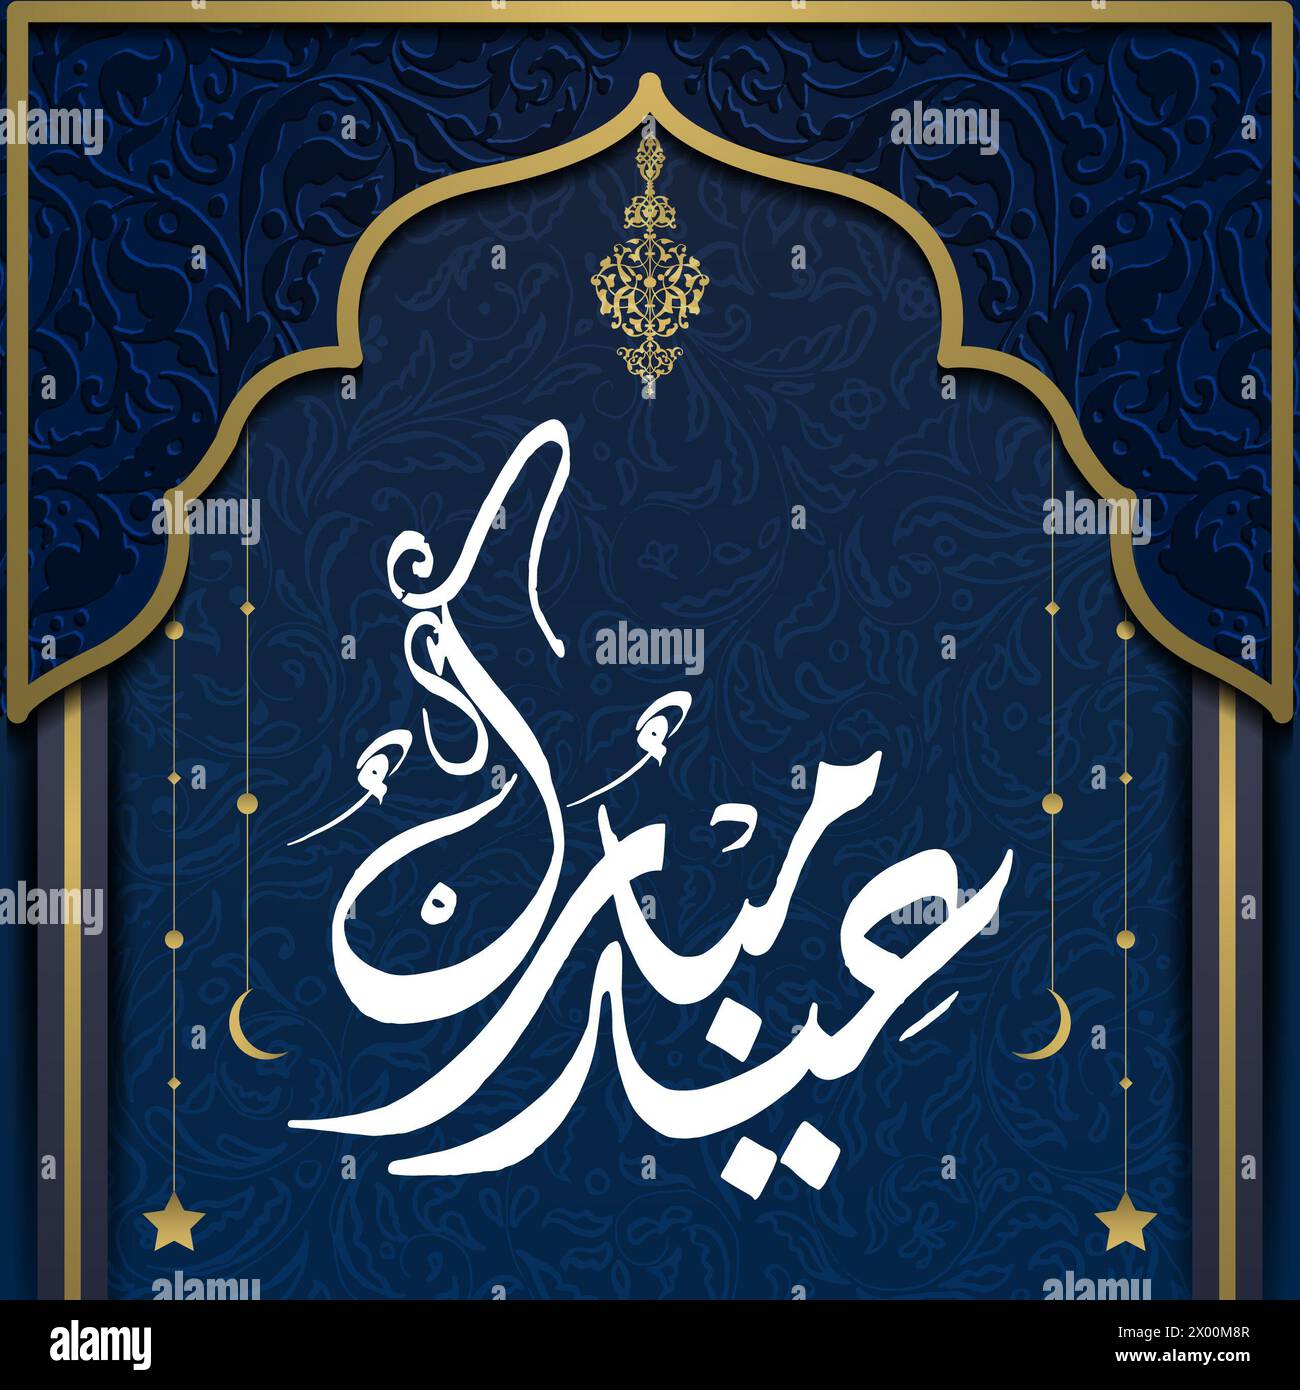 'Eid Moubarak' mots arabes qui signifient Eid béni, ornement islamique, carte de voeux Eid moubarak, message d'occasion islamique, publication de l'Eid sur les médias sociaux Banque D'Images